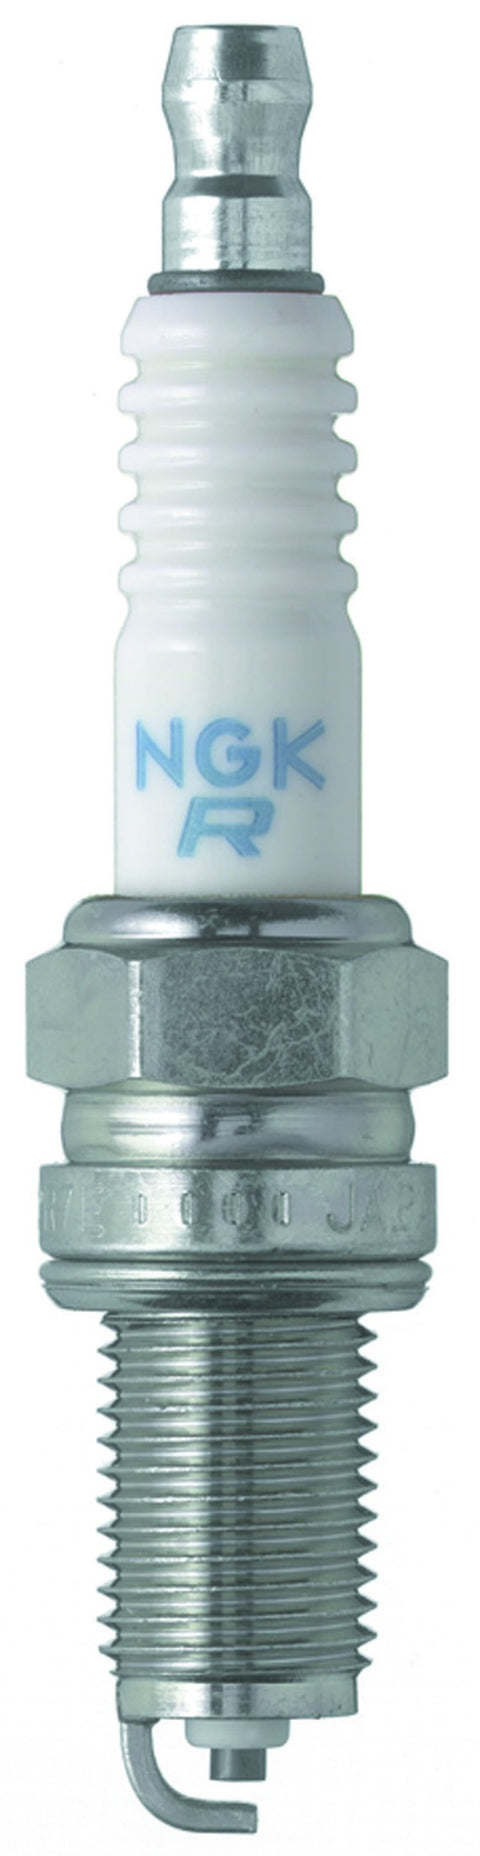 NGK Copper Heat Range 8 Spark Plug | Multiple BMW Fitments (4339-1)